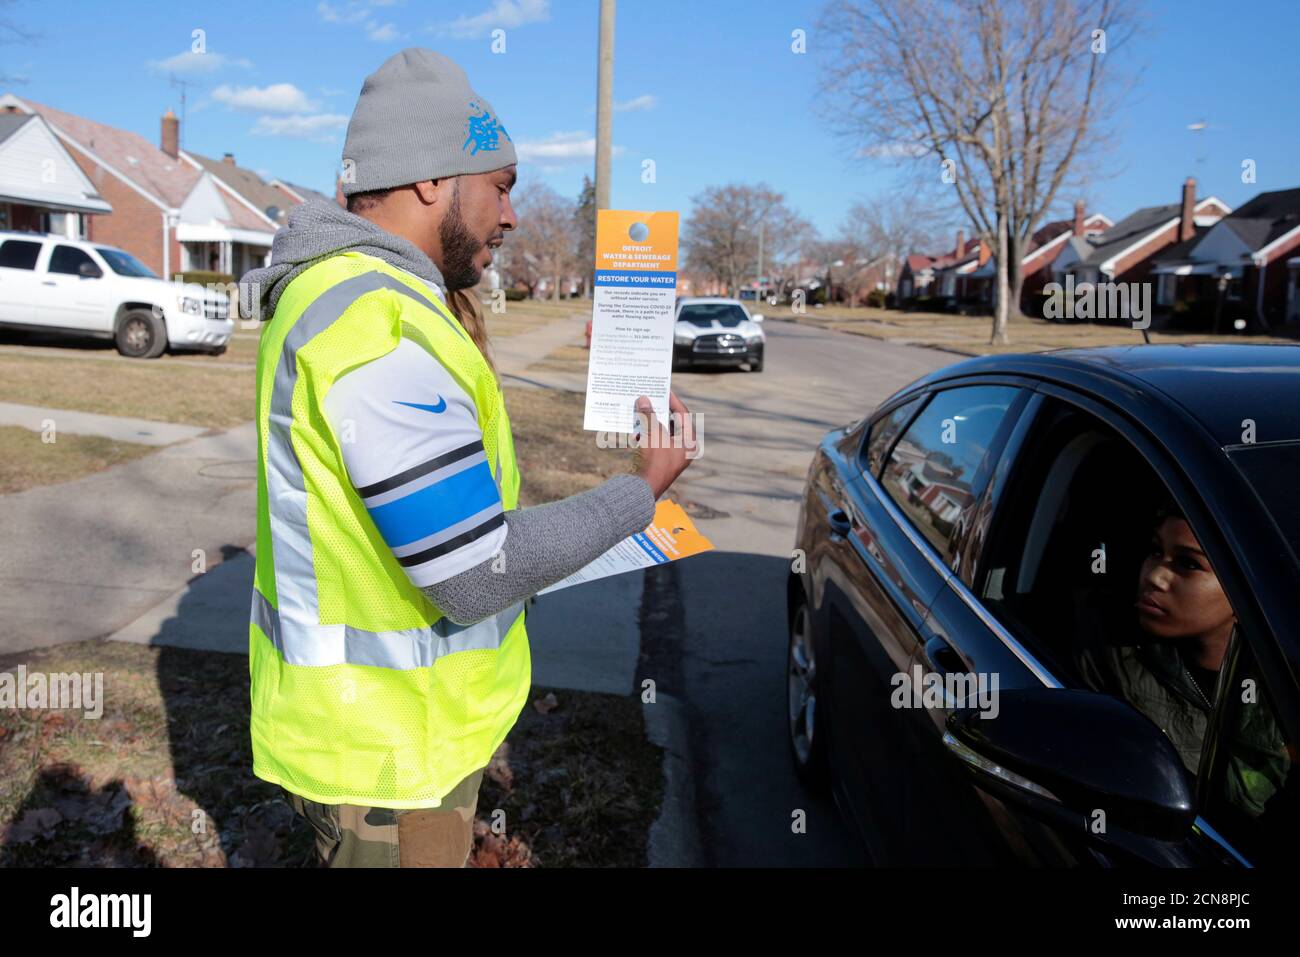 El trabajador por contrato Vaughn Harrington entrega un aviso por el Departamento de agua y Alcantarillado de Detroit para informar a los residentes cómo restaurar el servicio de agua en respuesta al brote de coronavirus en Detroit, Michigan, EE.UU., 13 de marzo de 2020. Foto tomada el 13 de marzo de 2020. REUTERS/Rebecca Cook Foto de stock